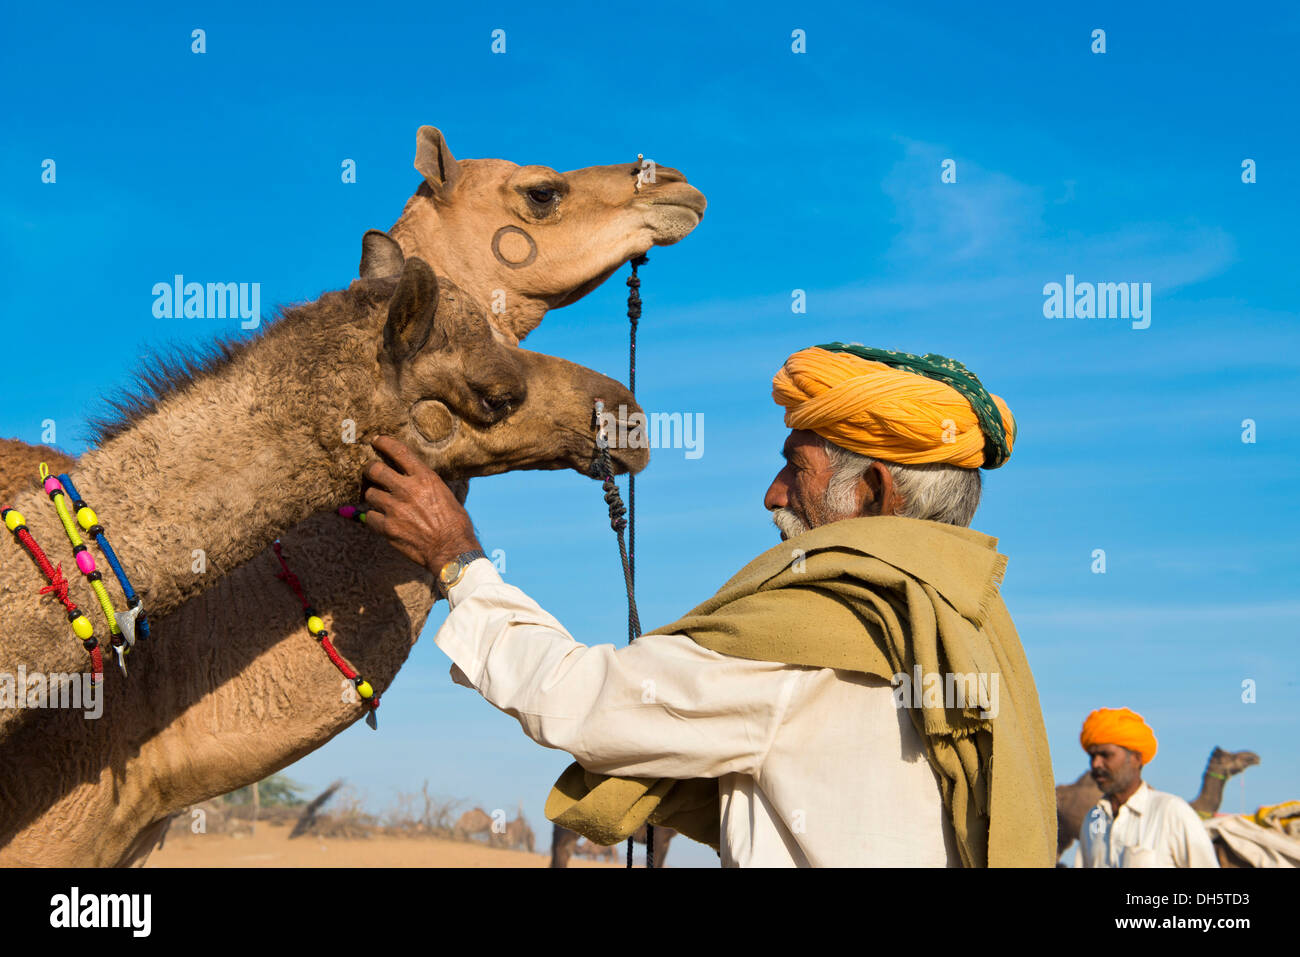 Hombre con un turbante indio está examinando dos camellos, el mercado de camellos, Feria de Pushkar, Pushkar, Rajastán, India Foto de stock